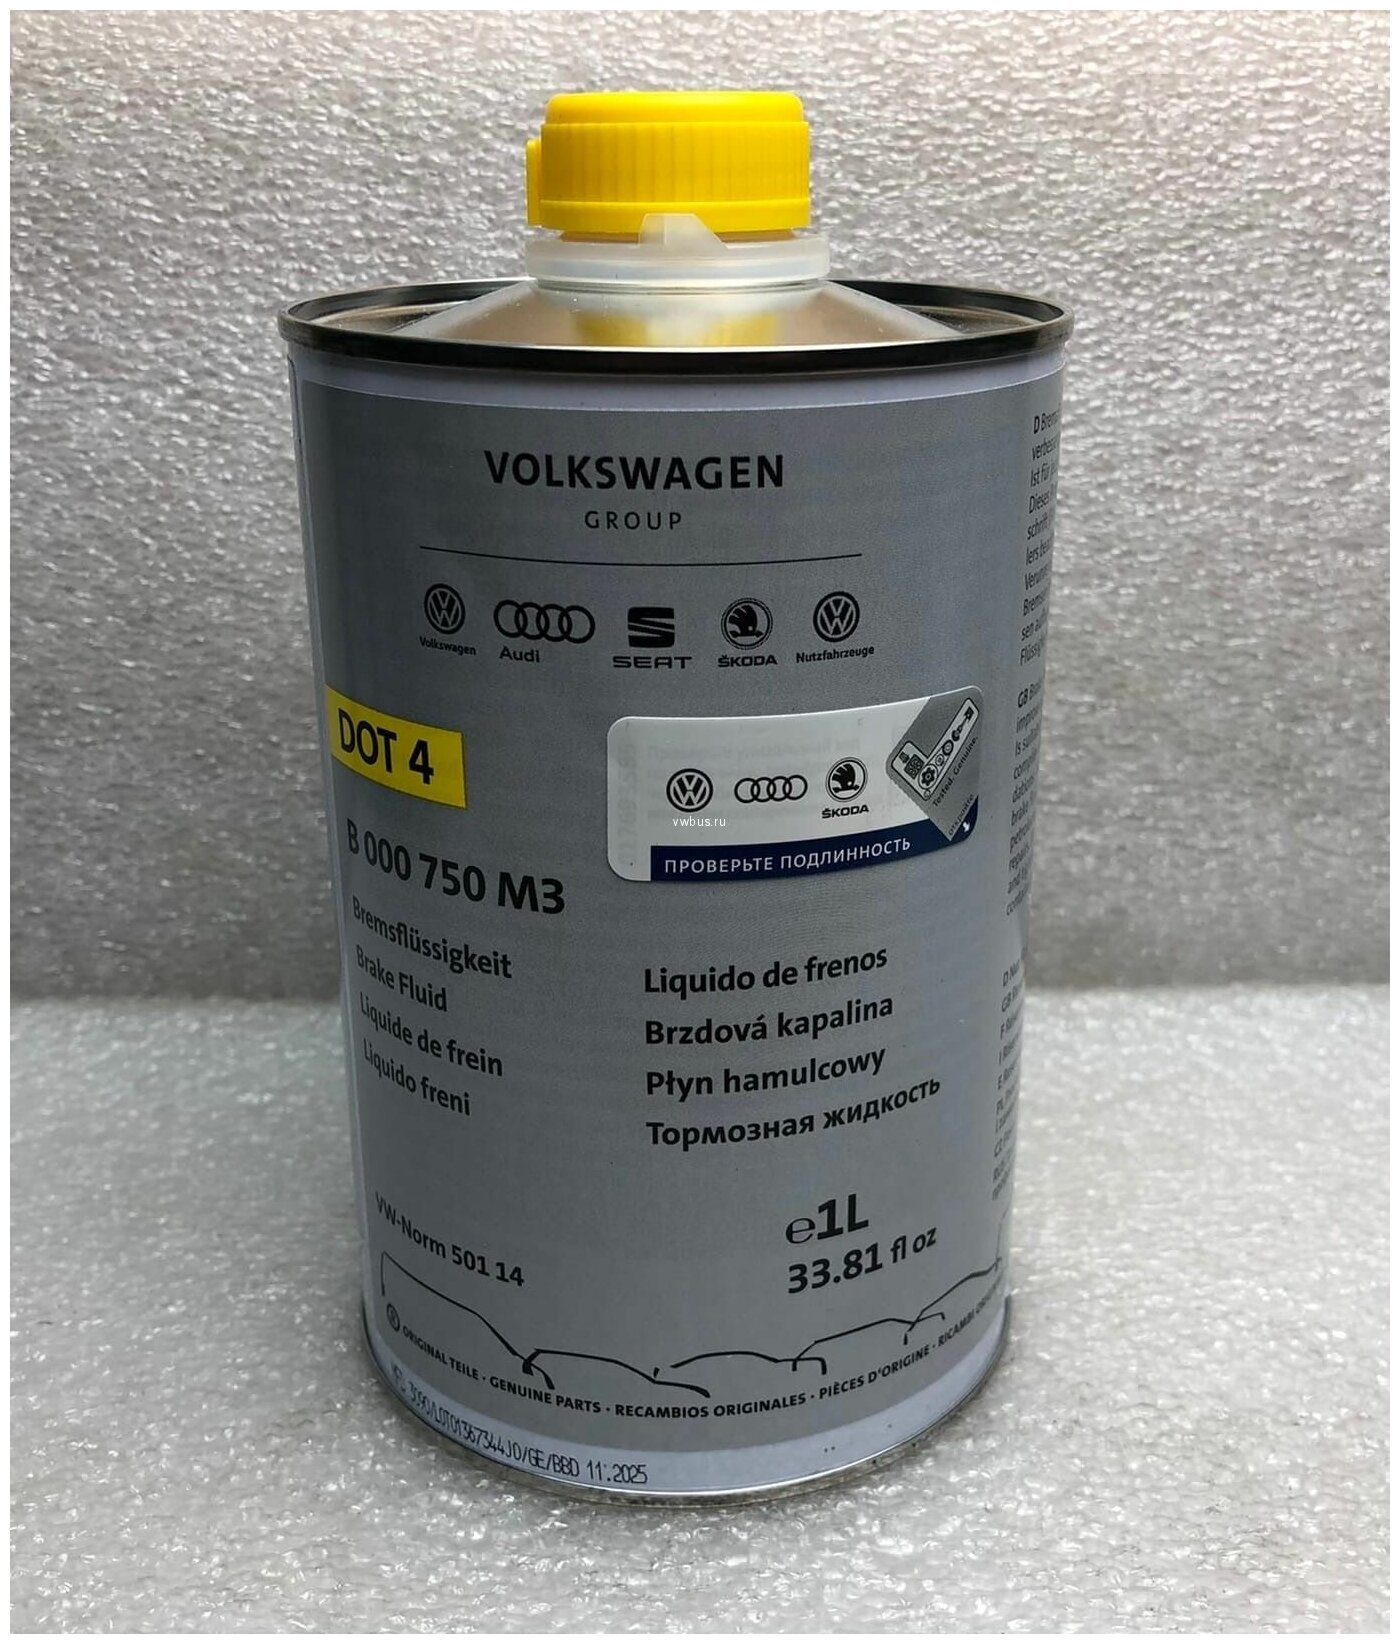 Тормозная жидкость VOLKSWAGEN DOT-4 B000750M3